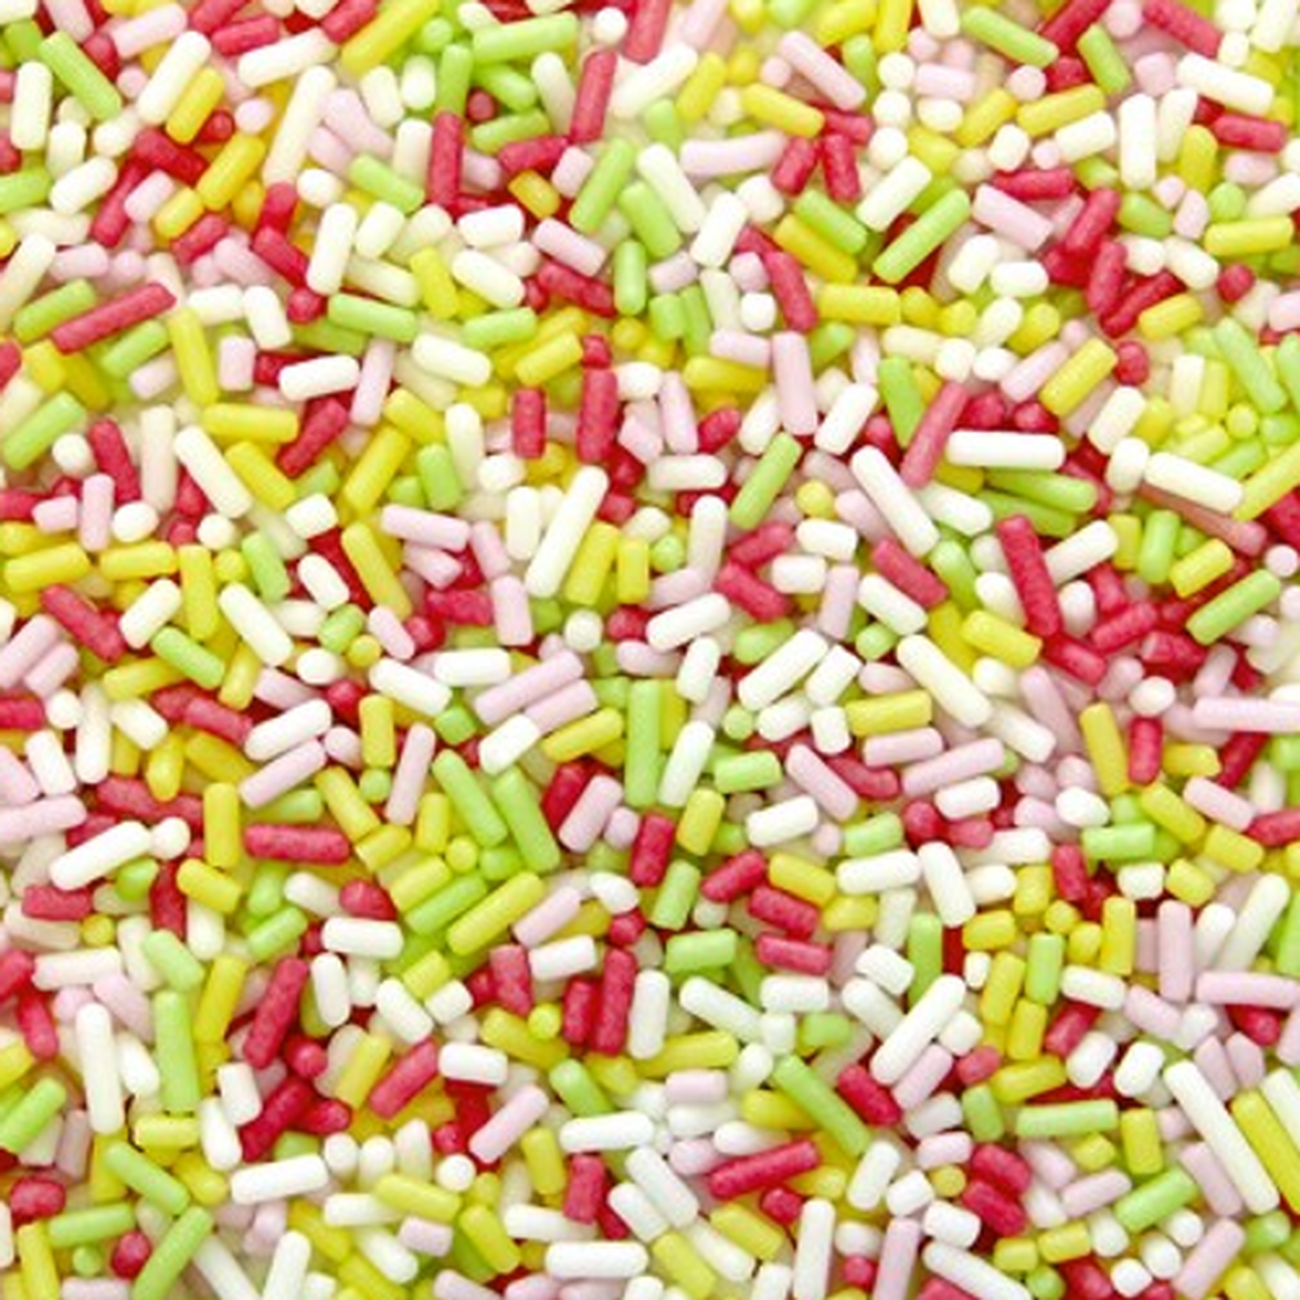 pme-multi-coloured-sugar-strand-sprinkles - PME Multi-Coloured Sugar Strand Sprinkles 